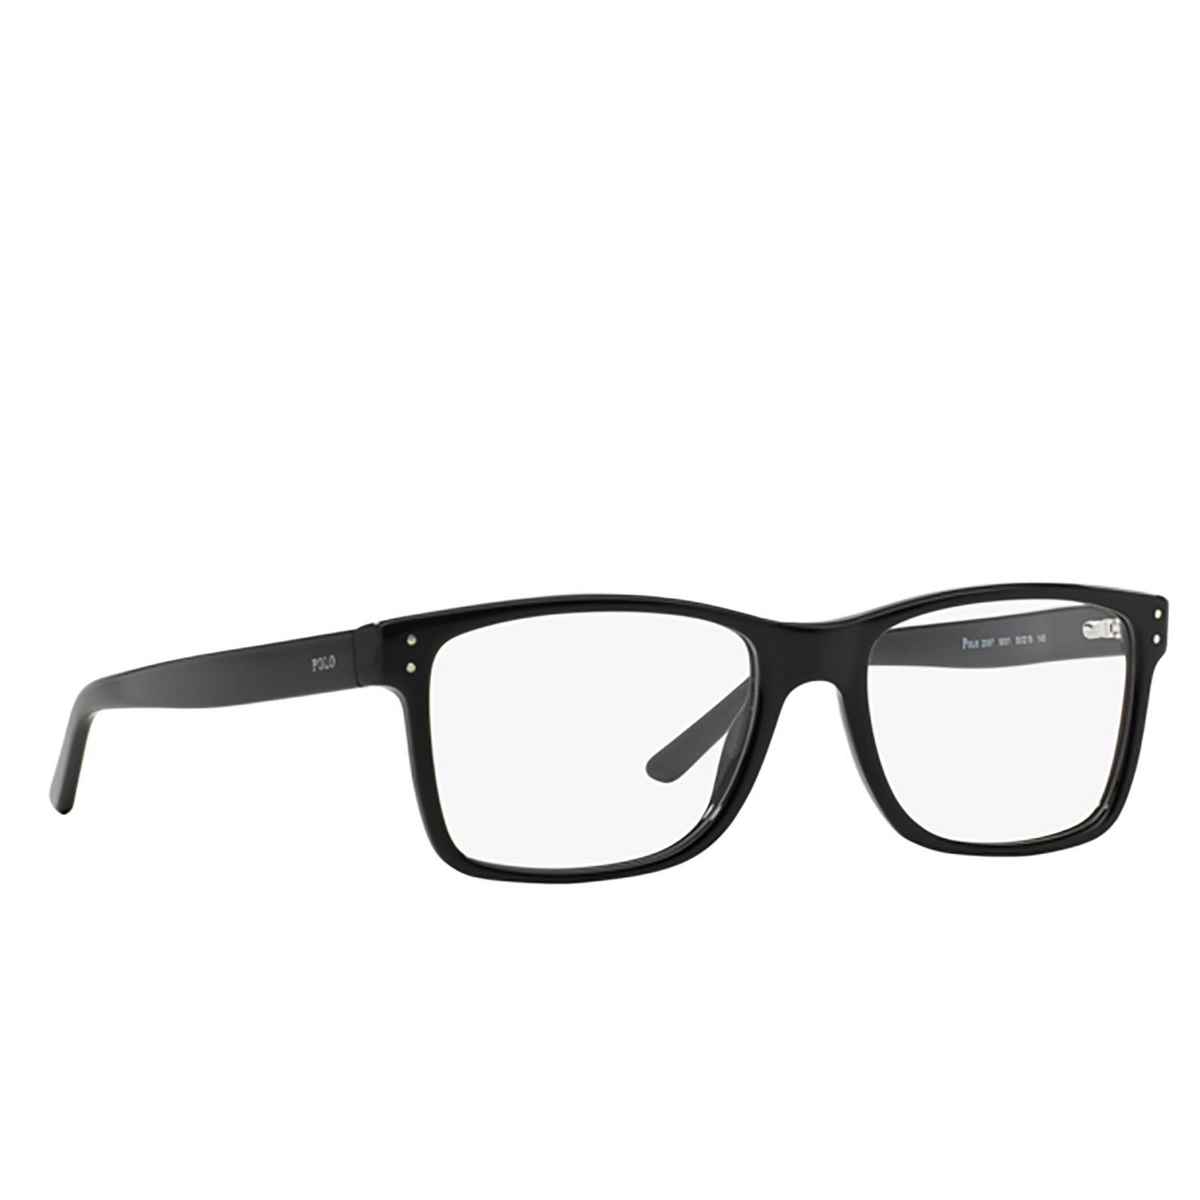 Polo Ralph Lauren PH2057 Eyeglasses 5001 - 2/3